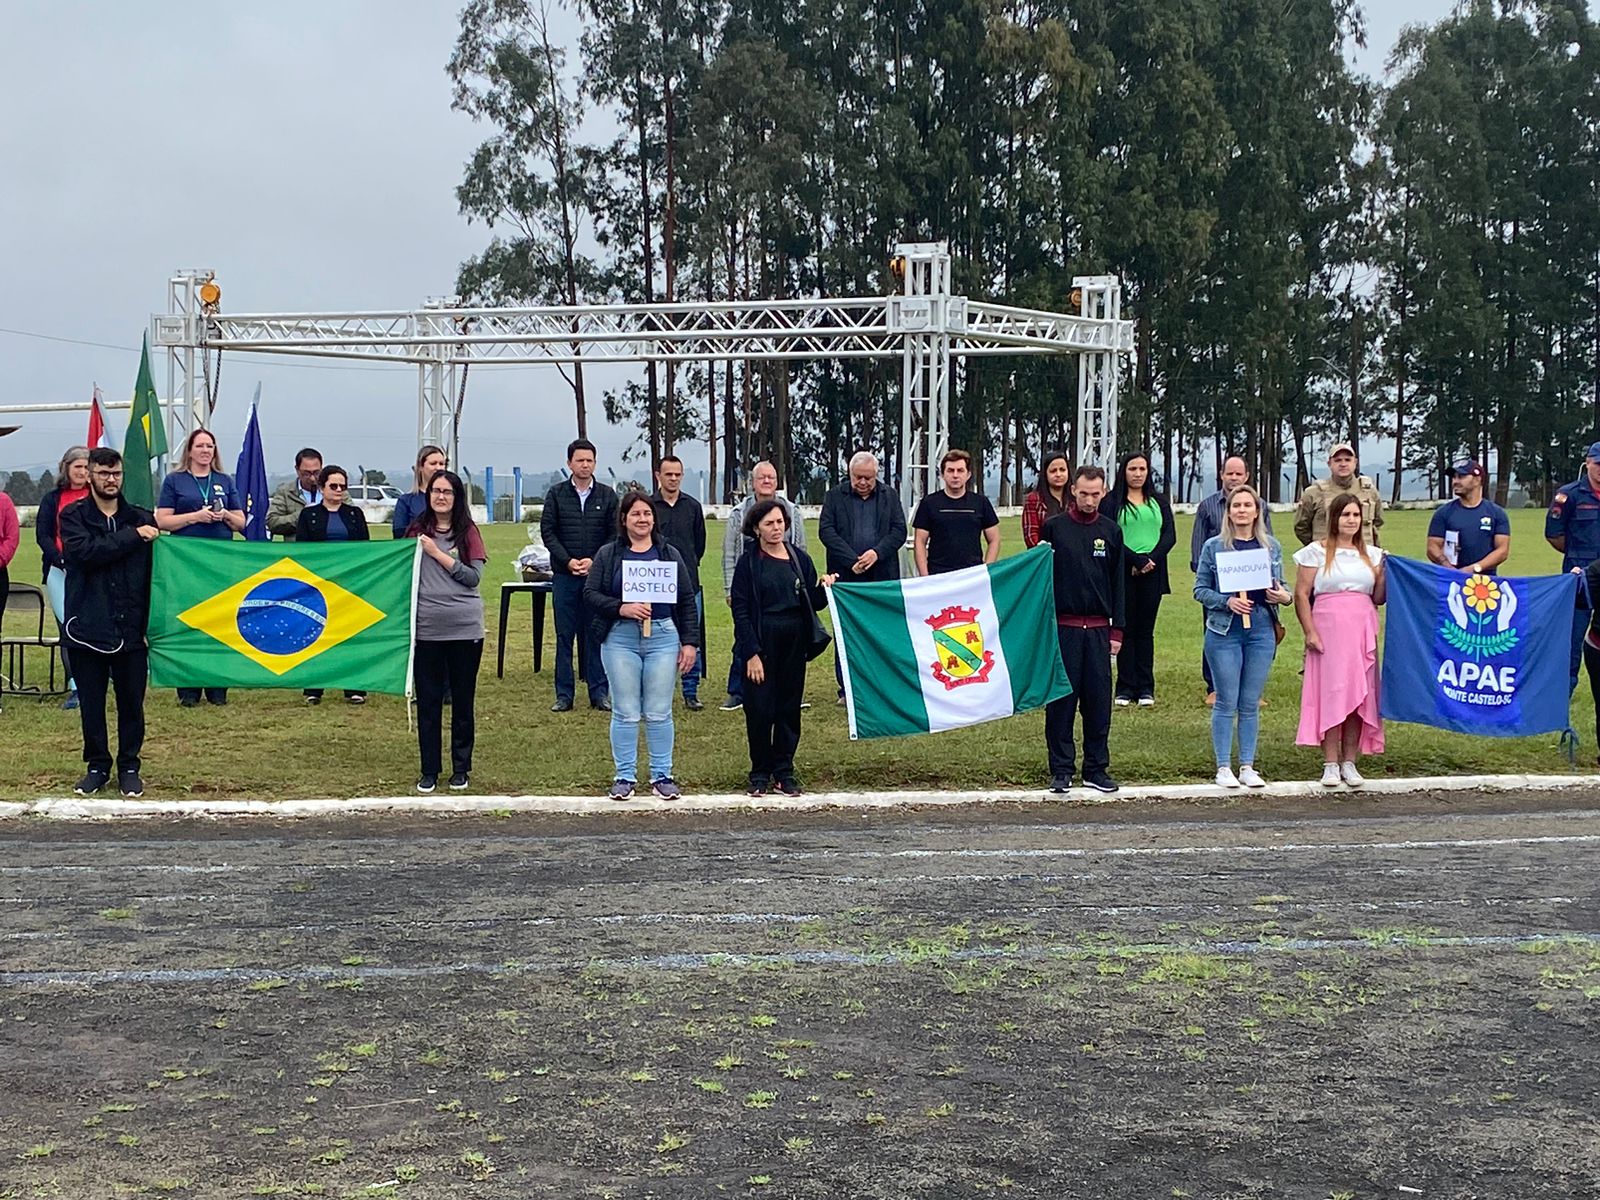 Emoção e União na Abertura da XXIII Olimpíada das Apaes de Santa Catarina em Monte Castelo